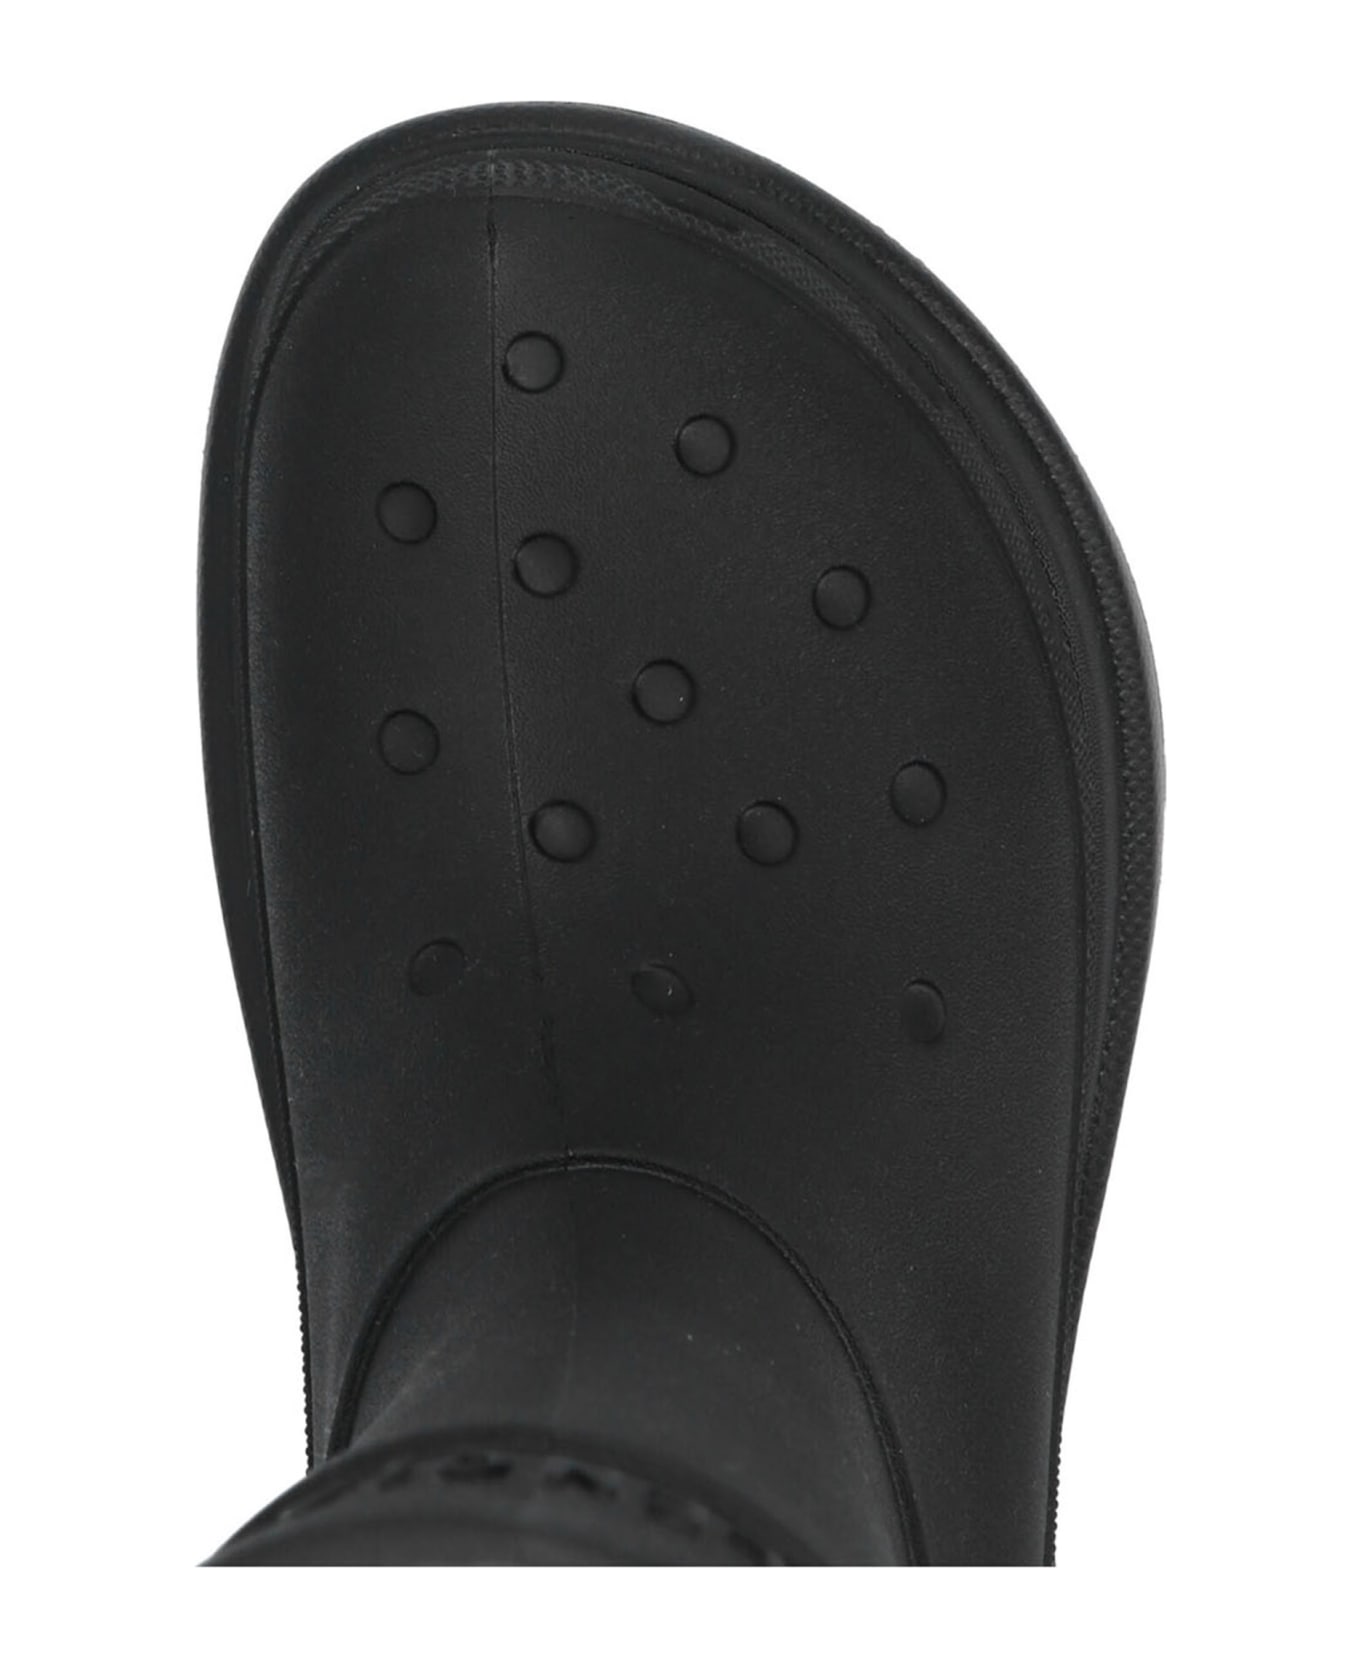 Balenciaga X Crocs Boots - Black